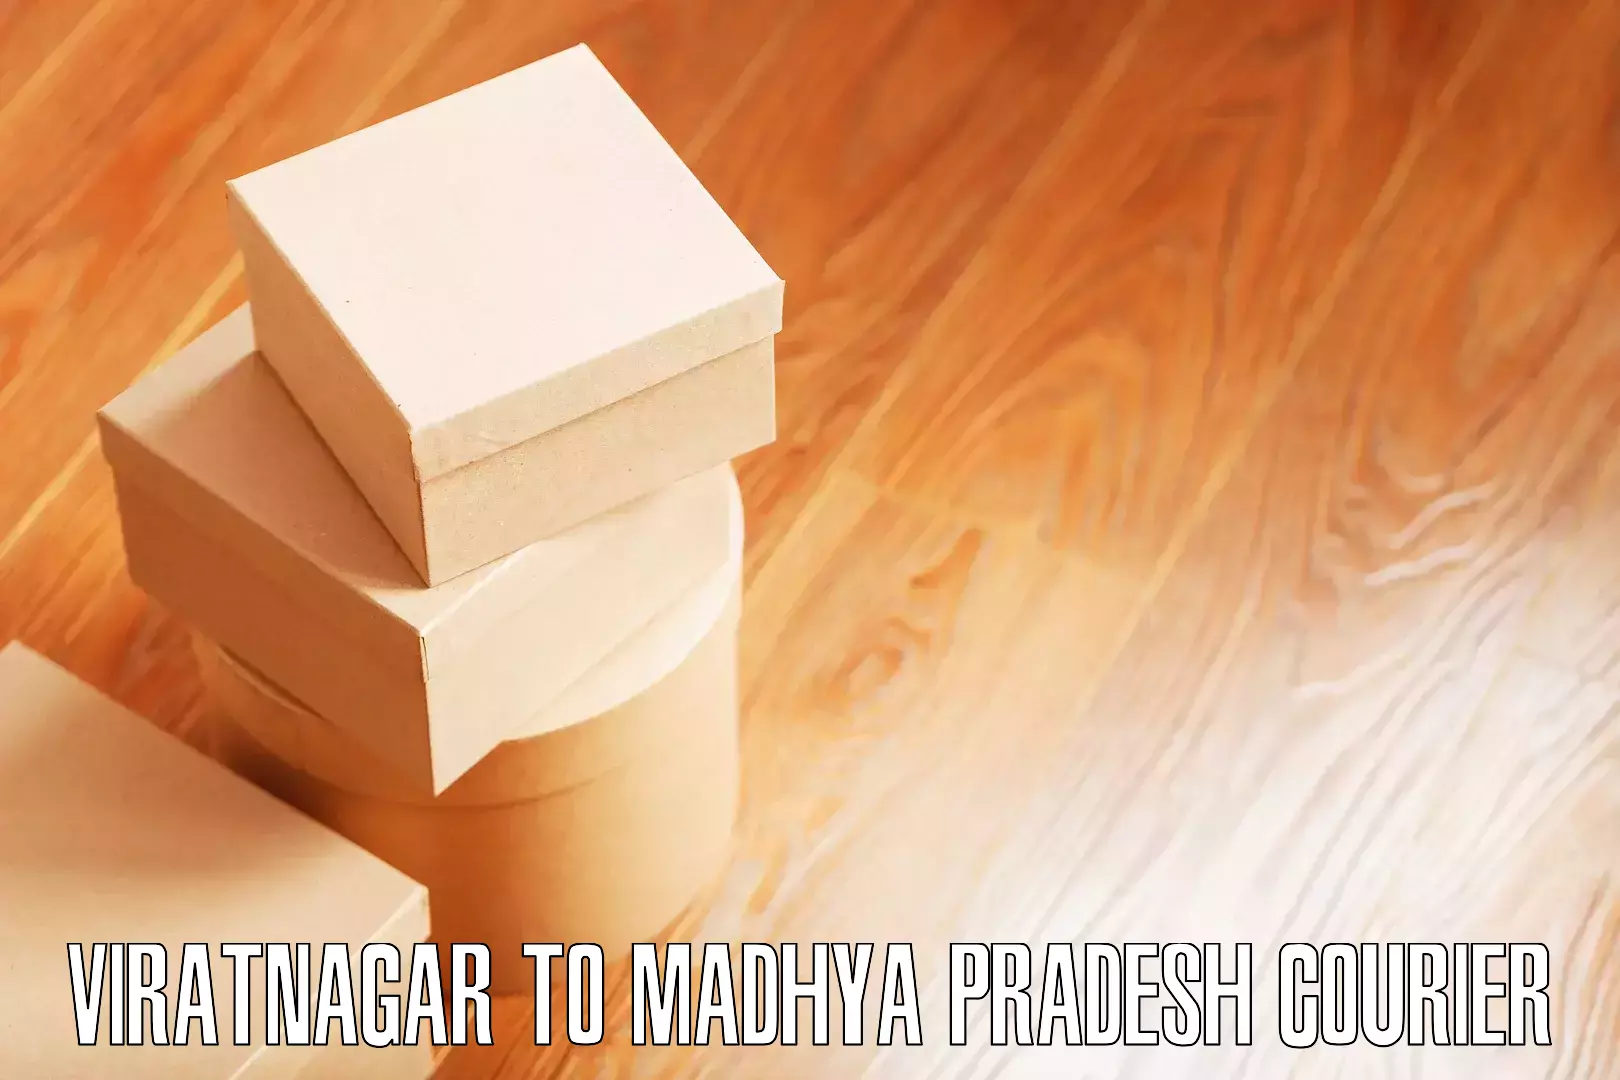 Residential furniture transport Viratnagar to Shahgarh